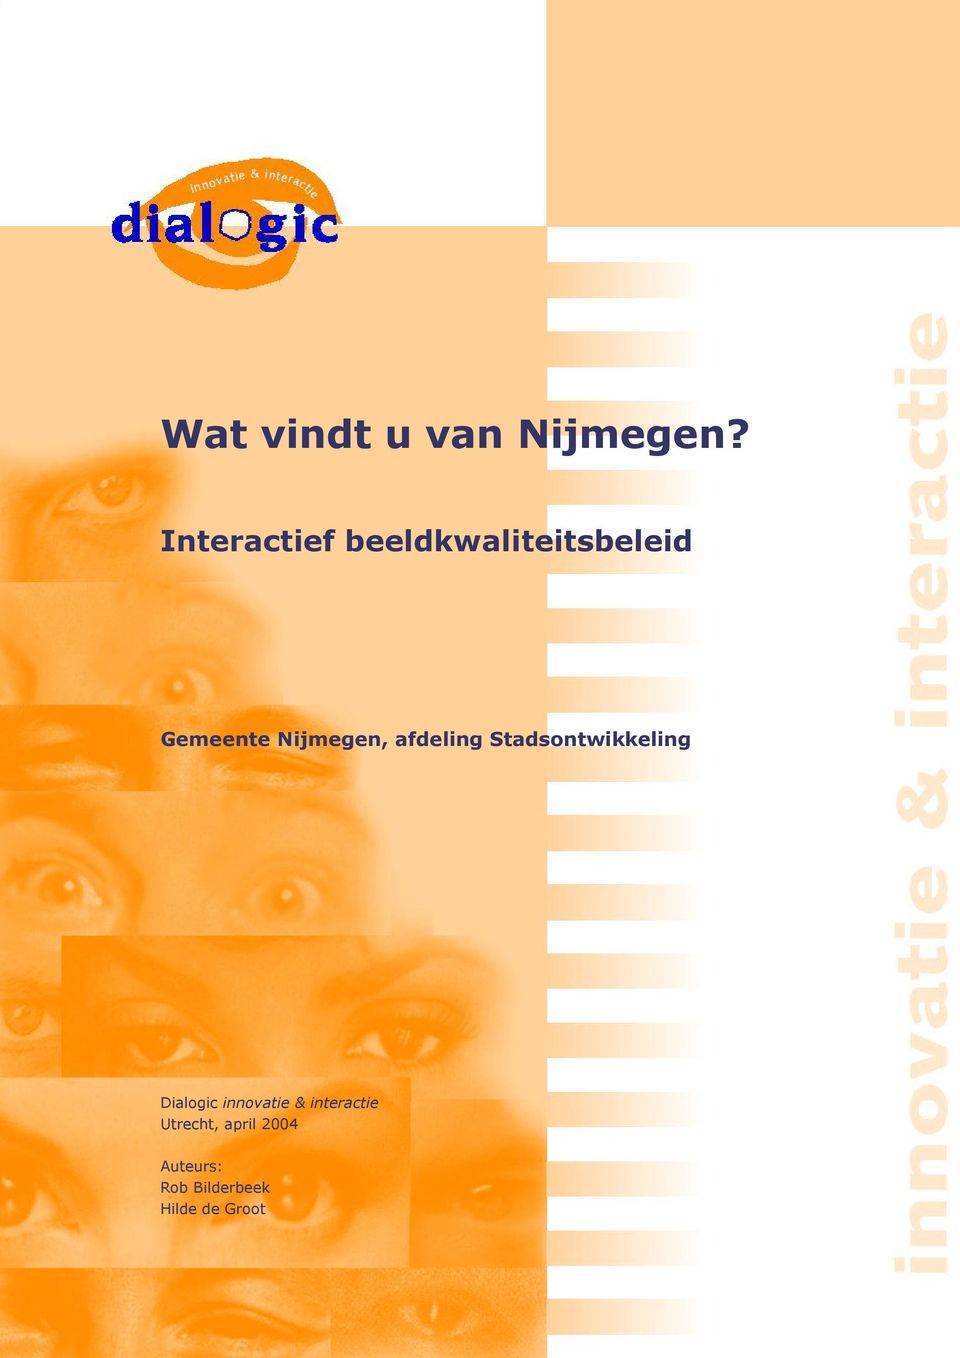 Nijmegen, afdeling Stadsontwikkeling Dialogic